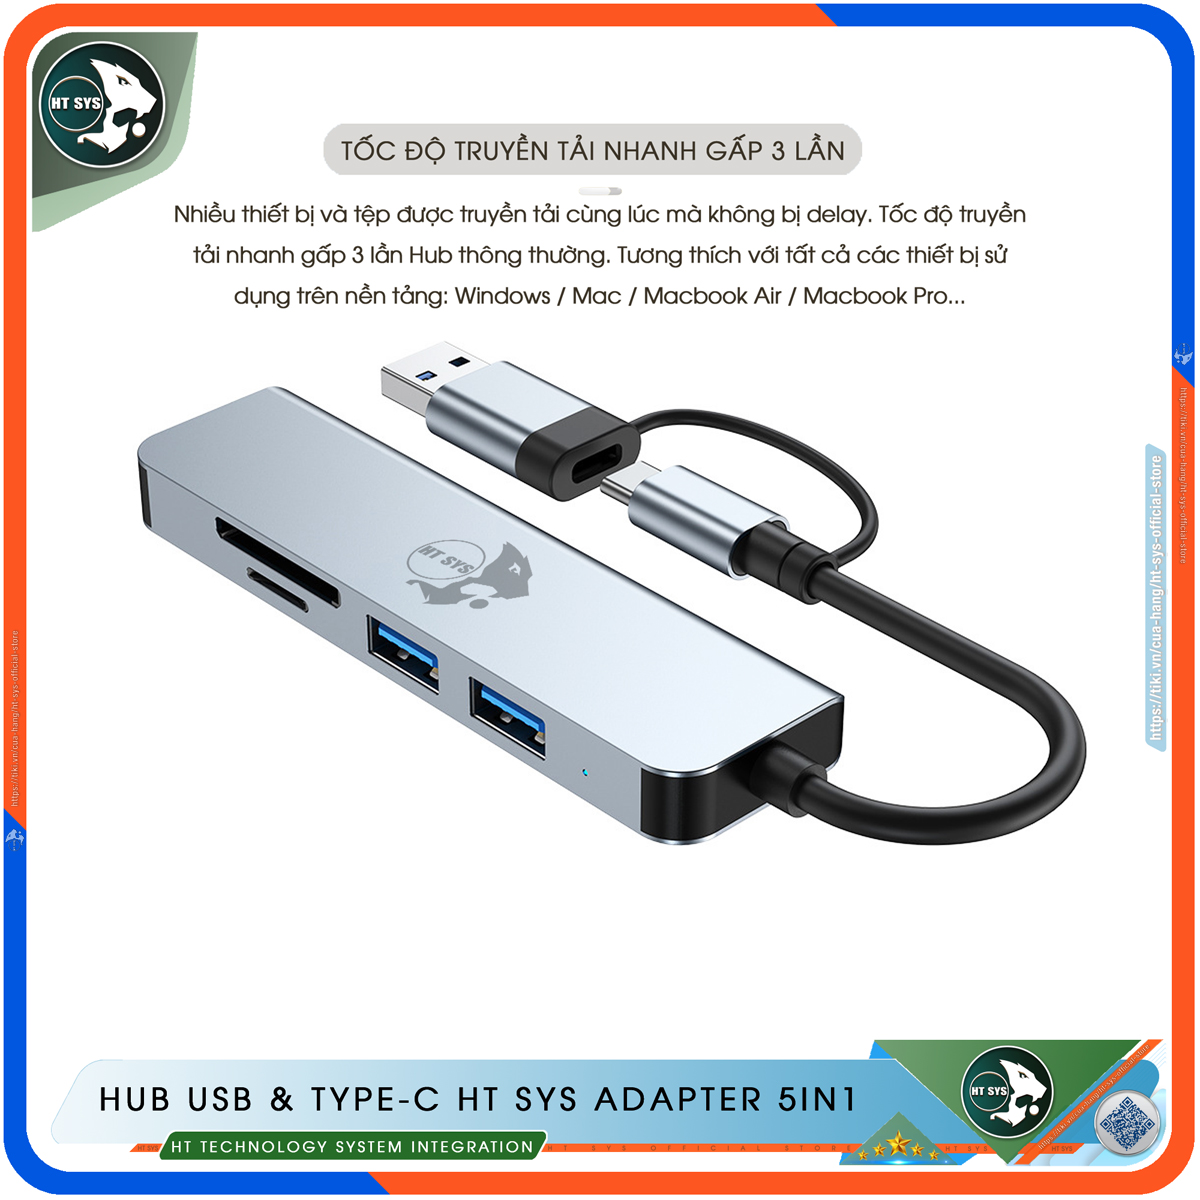 Hub Type C Và Hub USB 3.0 HT SYS Adapter 5in1 - Cổng Chia USB Mở Rộng Kết Nối Tốc Độ Cao Dành Cho Macbook, Laptop, PC - Hub Chuyển Đổi USB Type-C Hỗ Trợ Sạc Pin, Kết Nối Đa Năng ổ Cứng, Bàn Phím, Chuột, Máy In, Ổ Chia USB - Hàng Chính Hãng